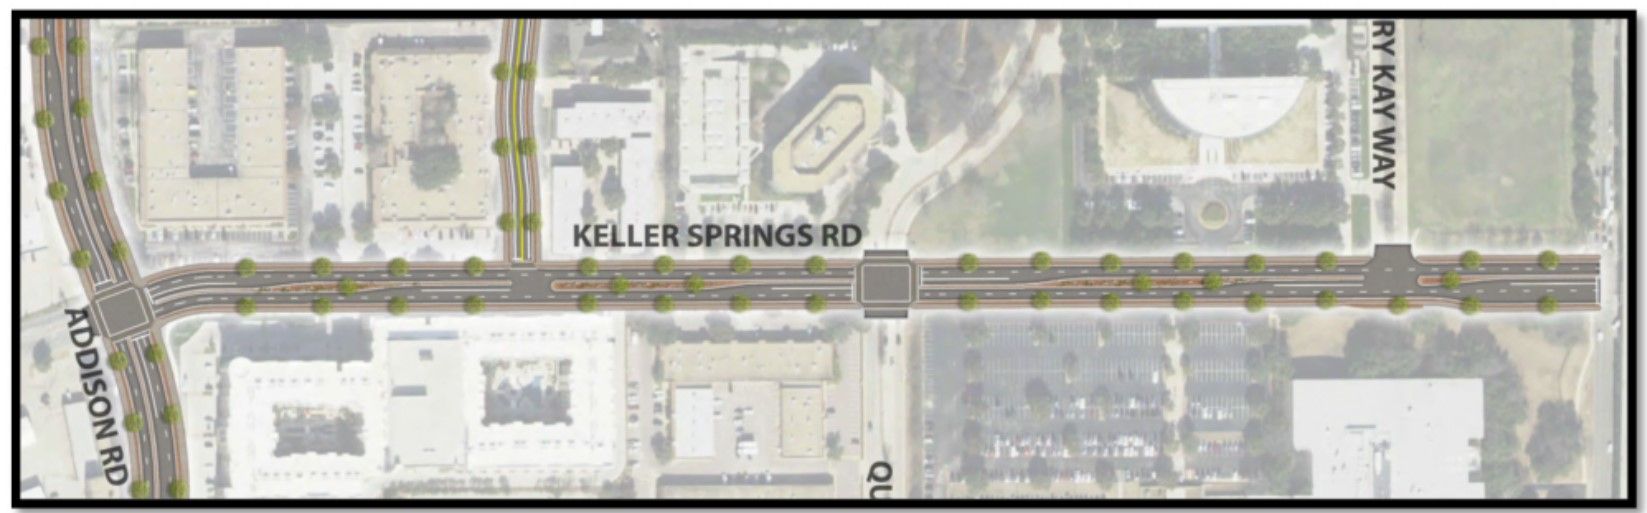 Keller Springs Reconstruction